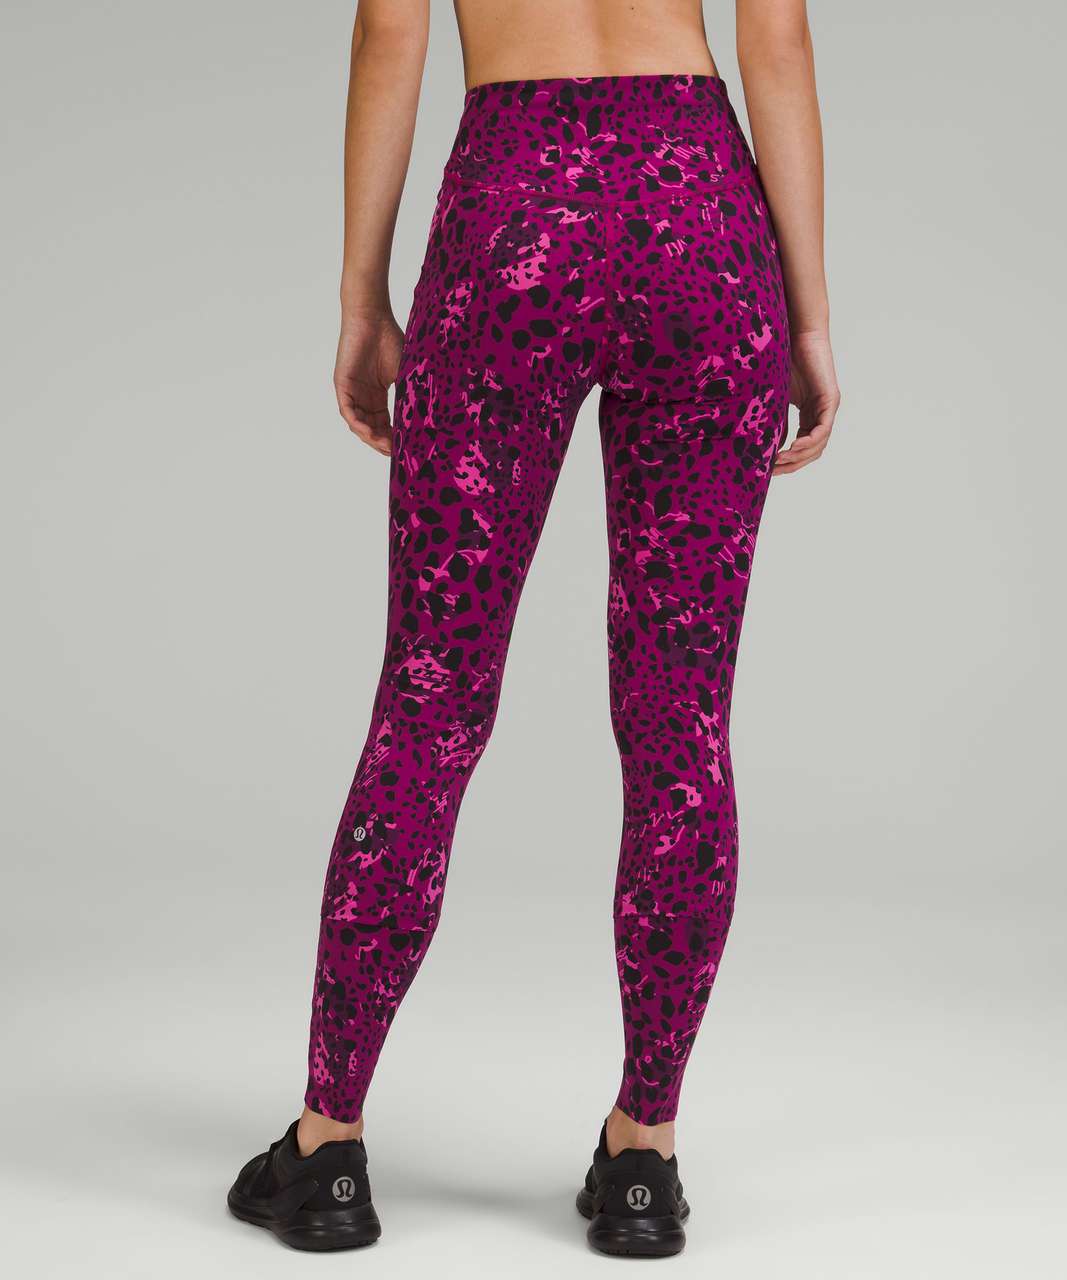 lululemon athletica, Pants & Jumpsuits, Lululemon Pink Cheetah Print  Leggings